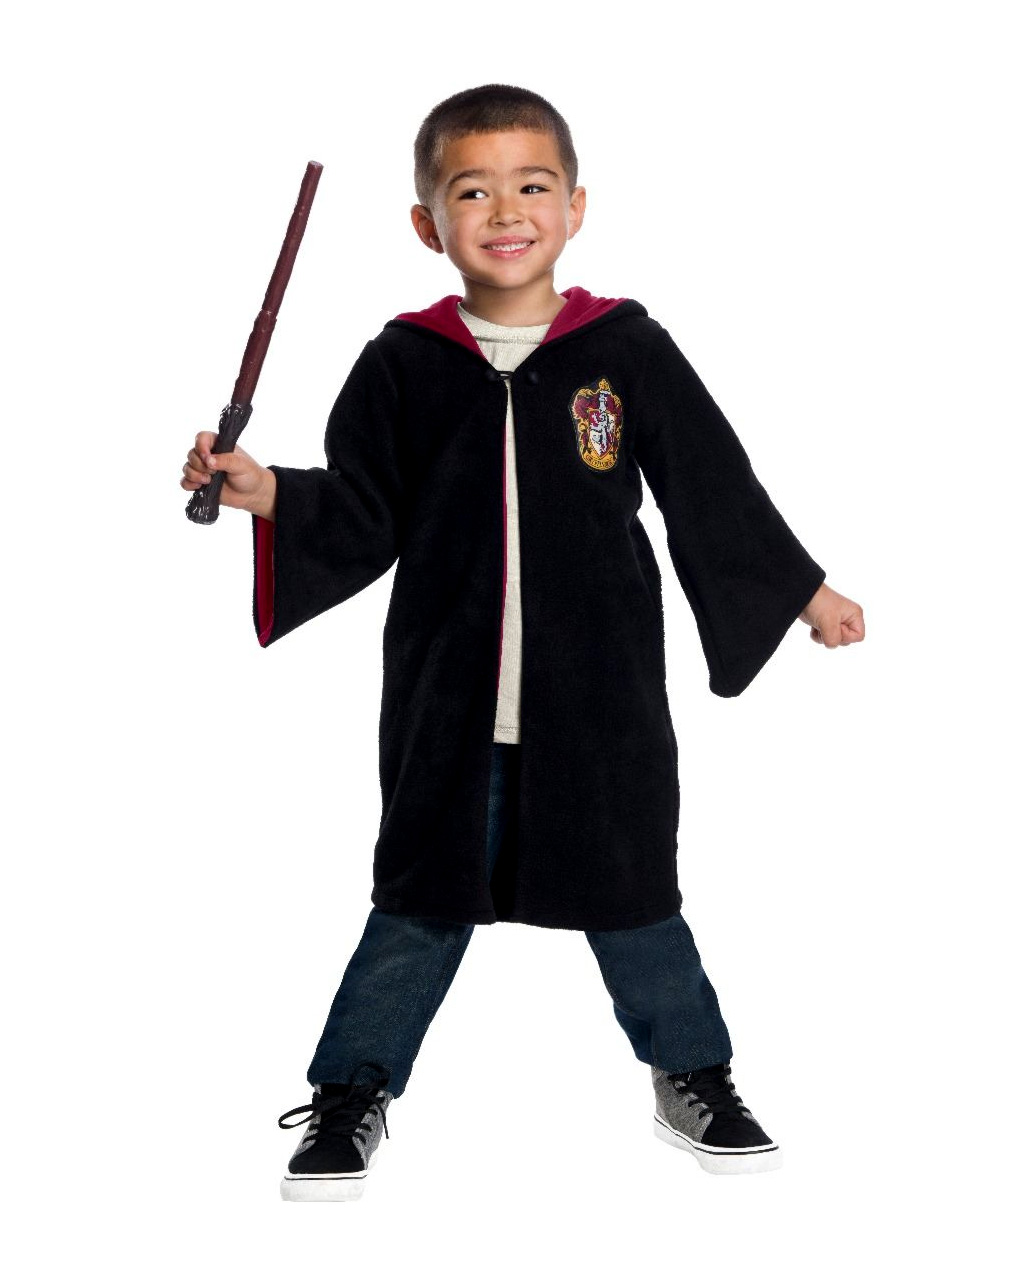 Harry Potter Gryffindor Toddler Black Robe Costume 